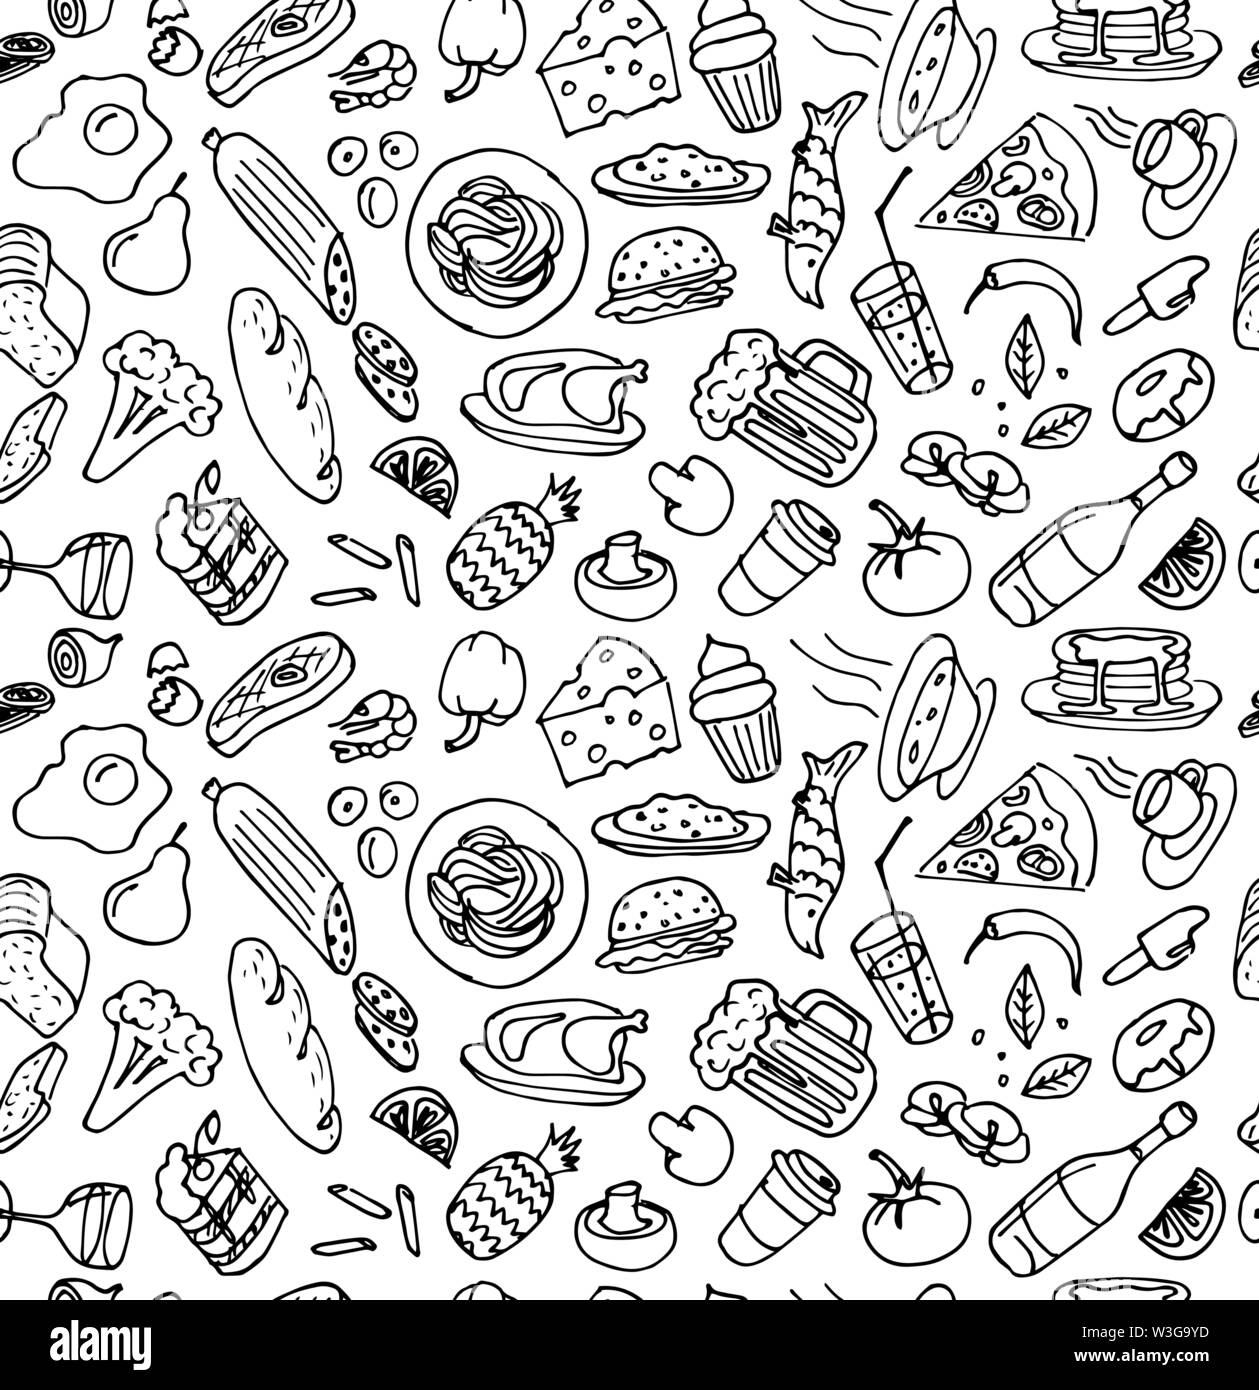 Bạn đang muốn tạo ra những bản vẽ tay thủ công về đồ ăn? Chúng tôi sẽ giúp bạn! Bộ vẽ tay đồ ăn thủ công của chúng tôi sẽ giúp bạn tạo ra những bản vẽ độc đáo và sáng tạo. Hãy xem ngay để khám phá những bộ vẽ tay này nhé!